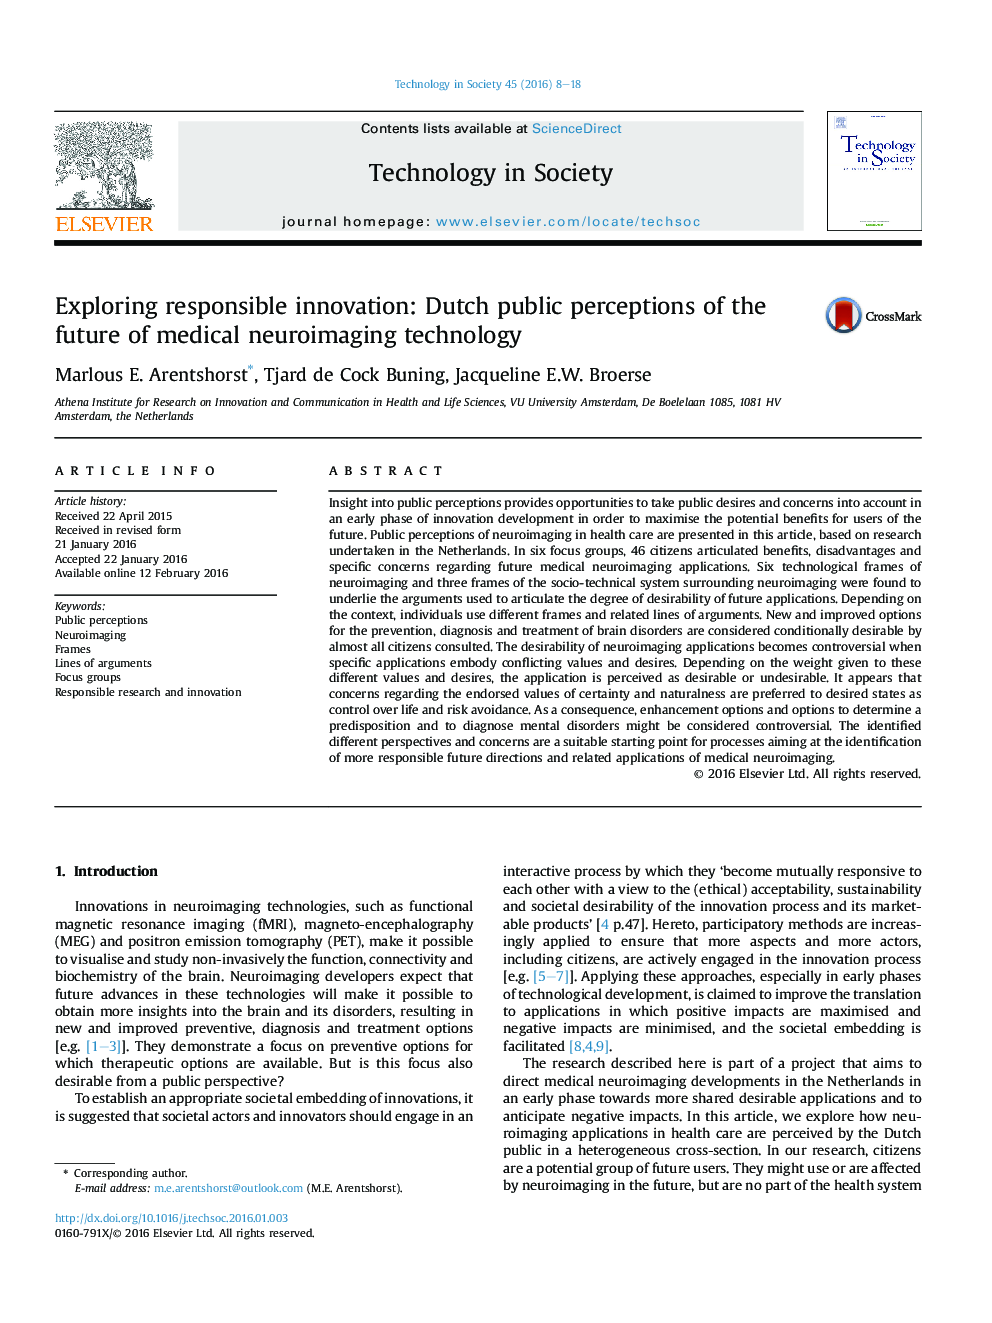 بررسی نوآوری معتبر: درک عمومی هلندی از آینده تکنولوژی تصویربرداری عصبی پزشکی